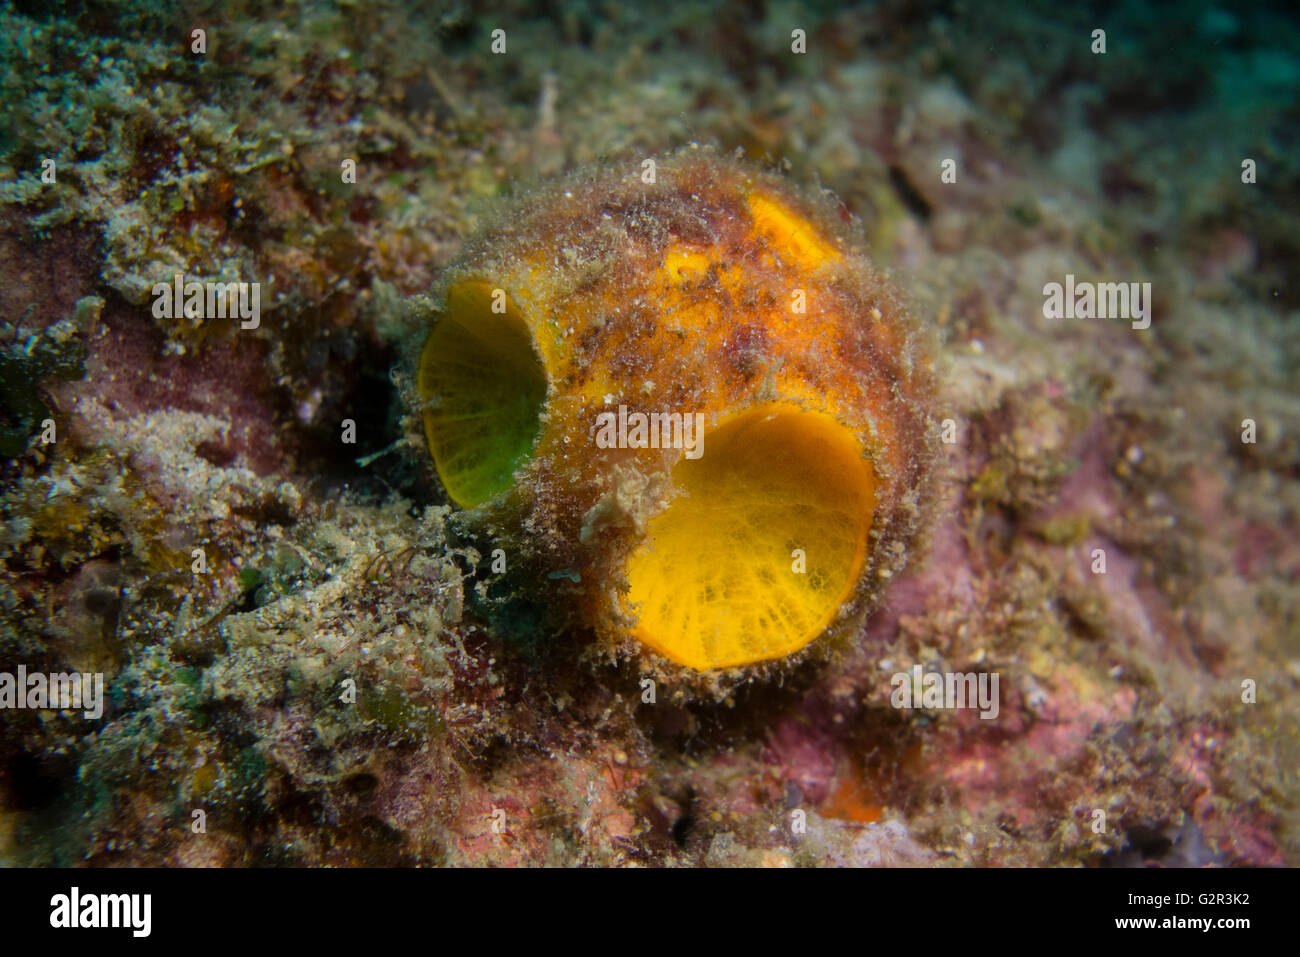 Arancione o la pallina da golf spugna, Cinachyra australiensis, dal Mare della Cina del Sud, Triangolo di corallo, Brunei Darussalam. Foto Stock